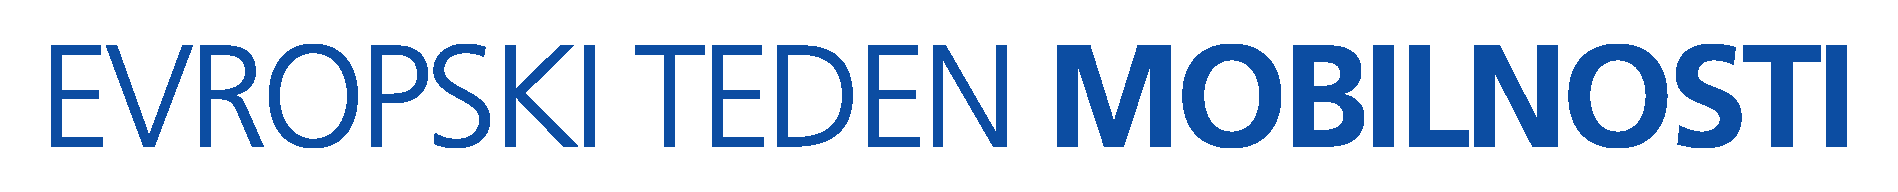 ETM-logo_01 (1).png